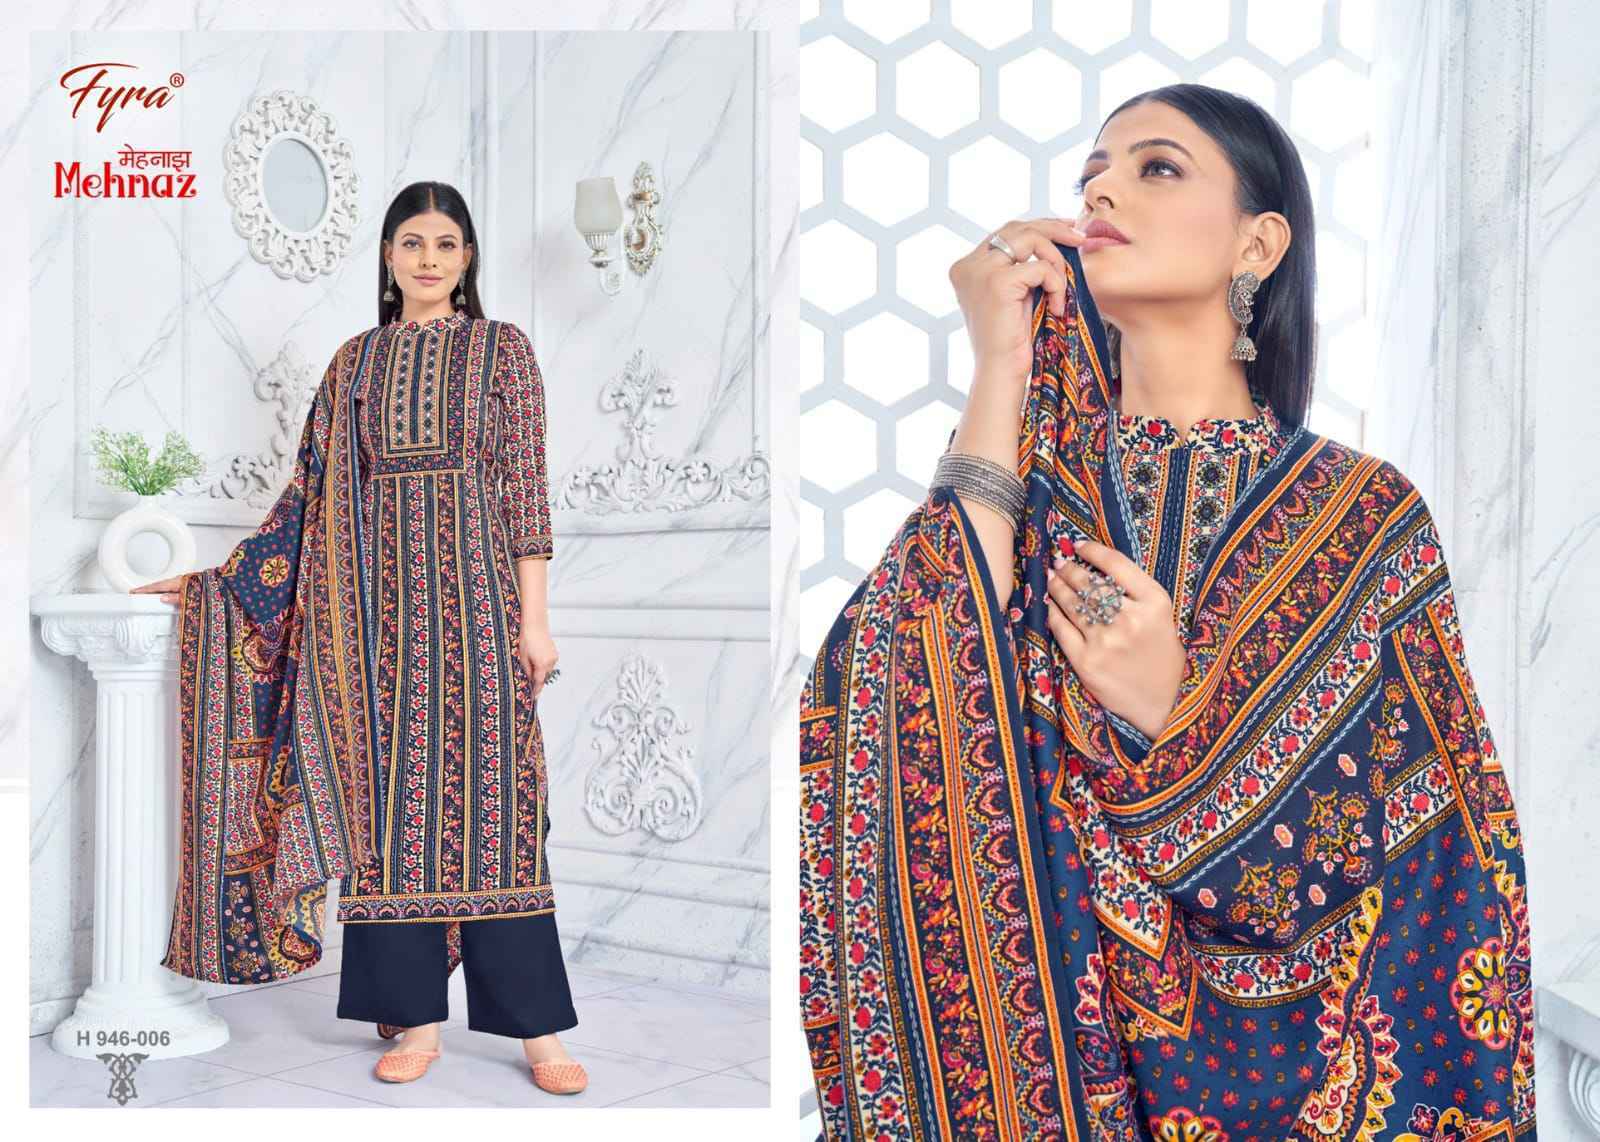 Fyra Mehnaz Pashmina Dress Material 8 pcs Catalogue - Surat Wholesale Market